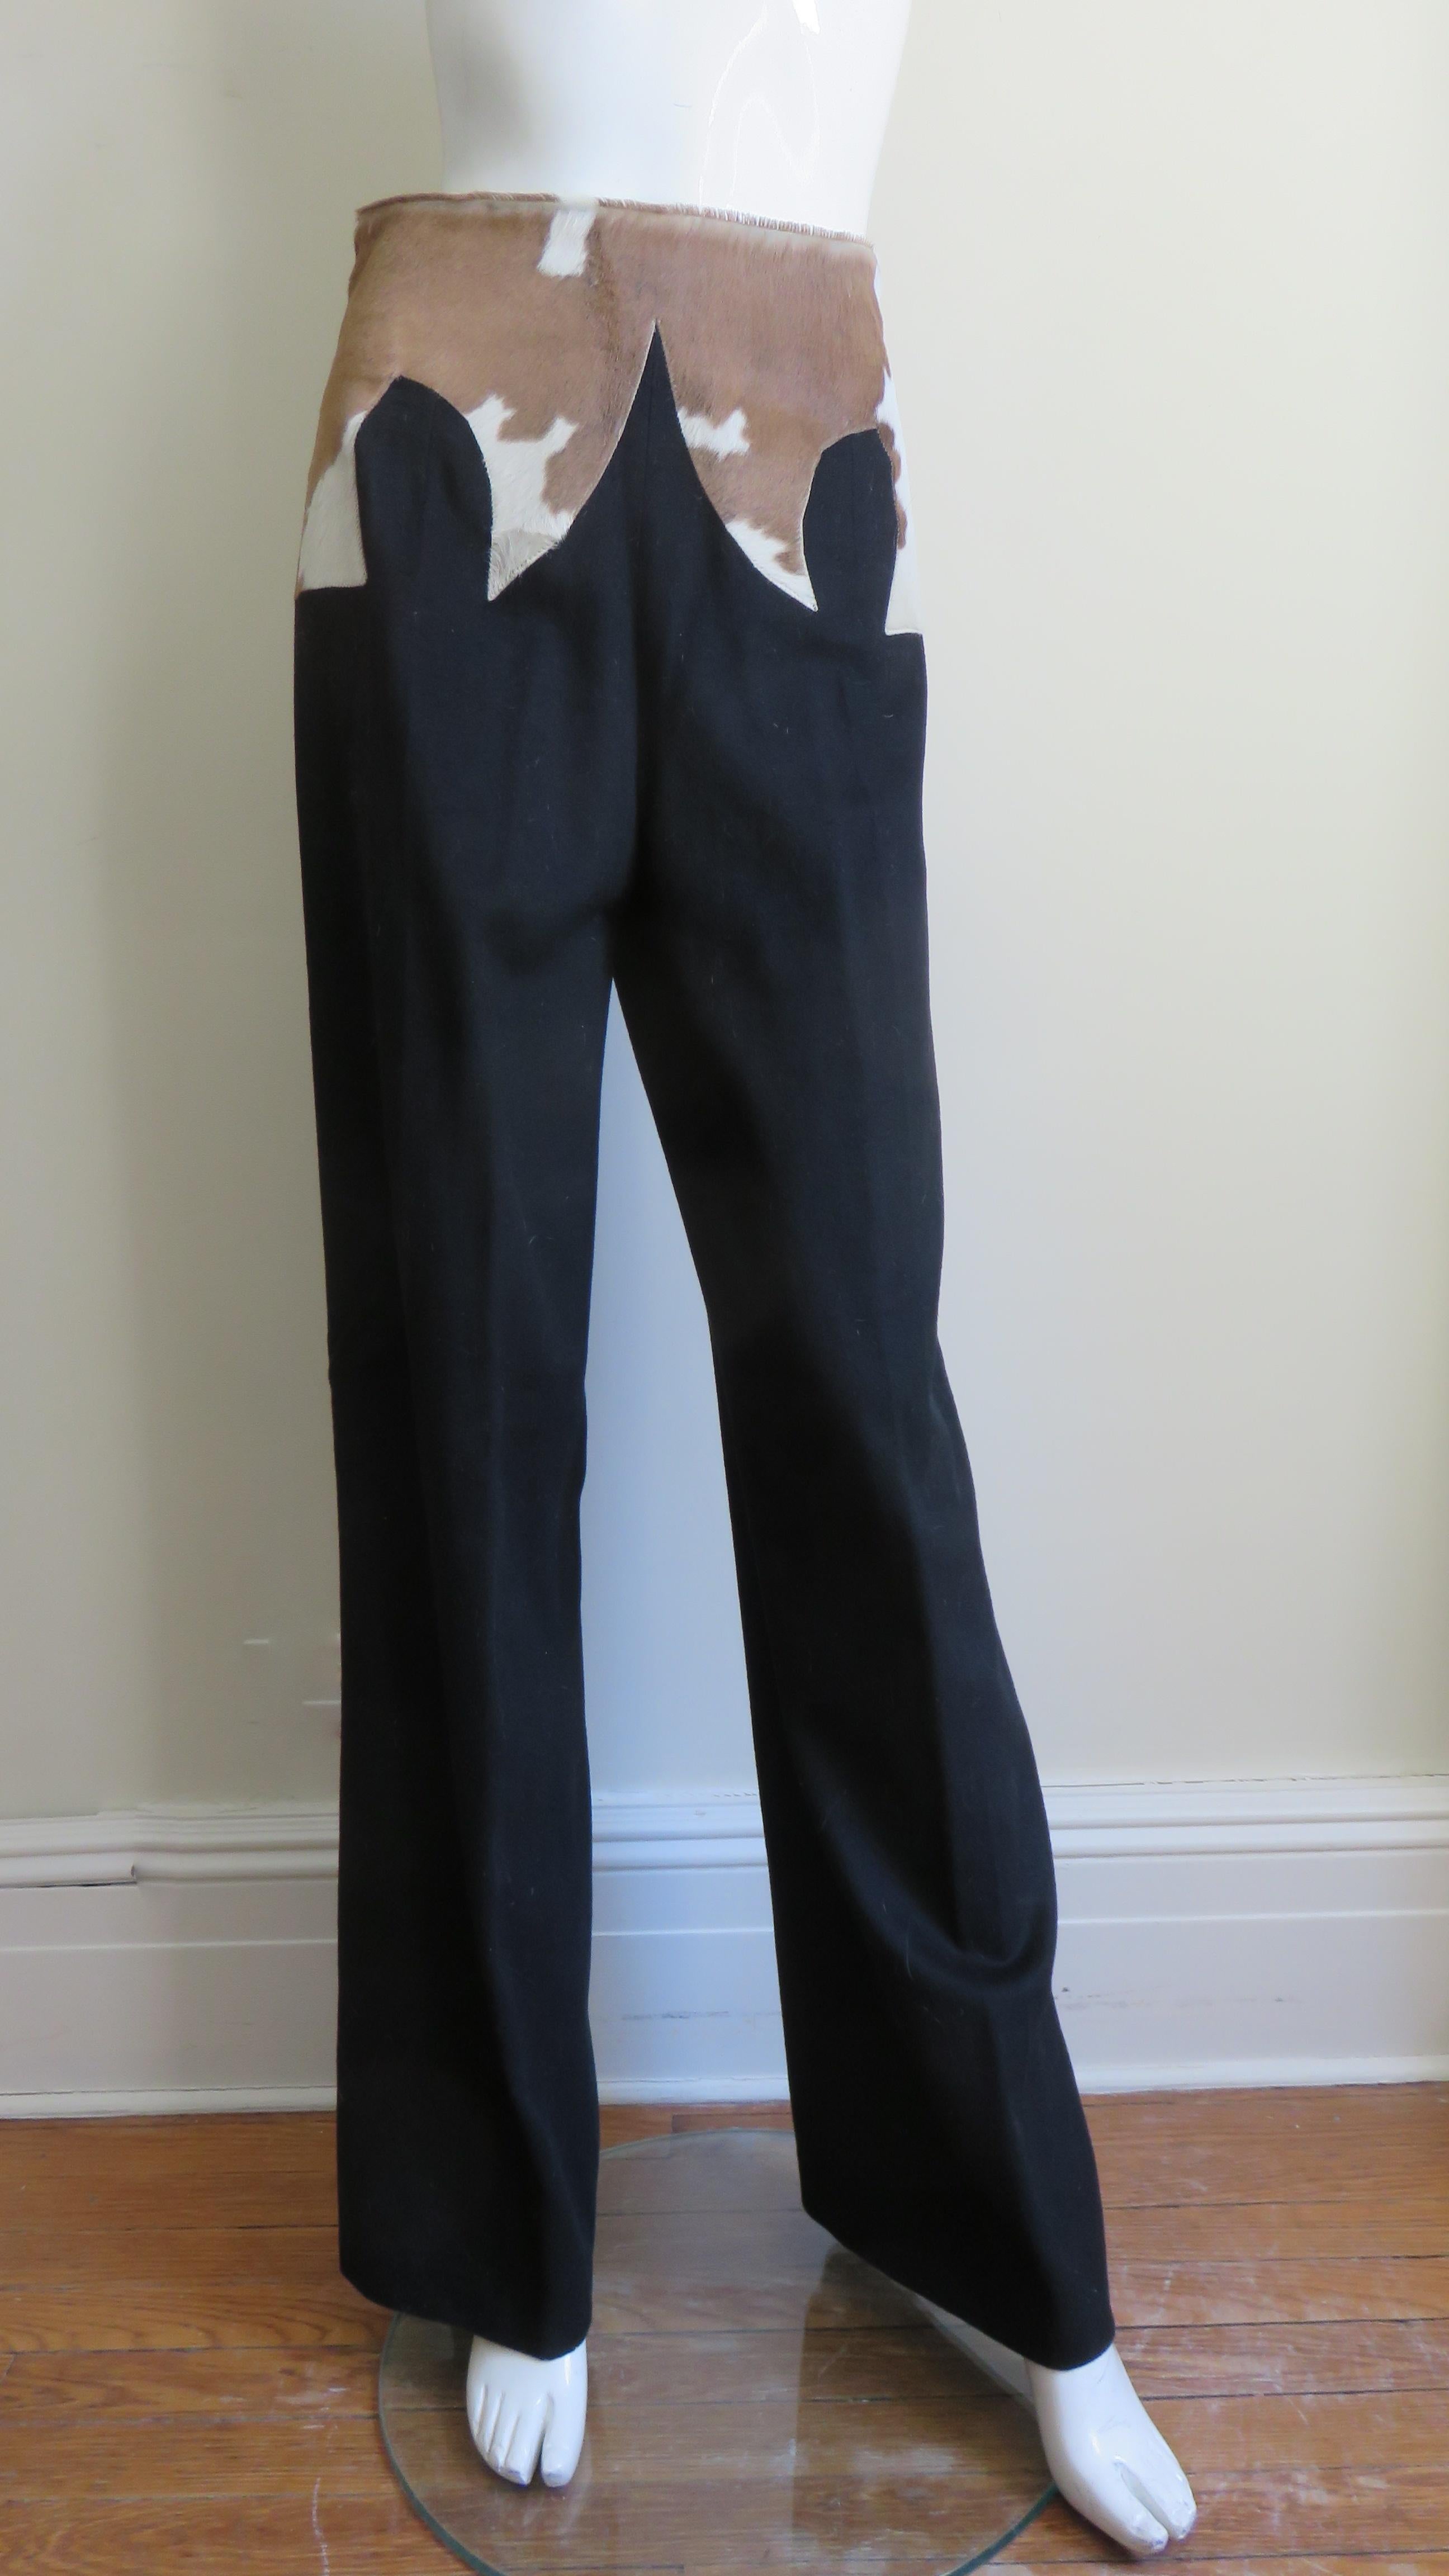 Fabuleux pantalon en laine noire Alexander McQueen de sa célèbre collection iconique 'It's a Jungle Out There' F/W 1997. Ils se distinguent par un empiècement stylisé en cuir de vachette à plusieurs points, appliqué à la taille. Il est doté de